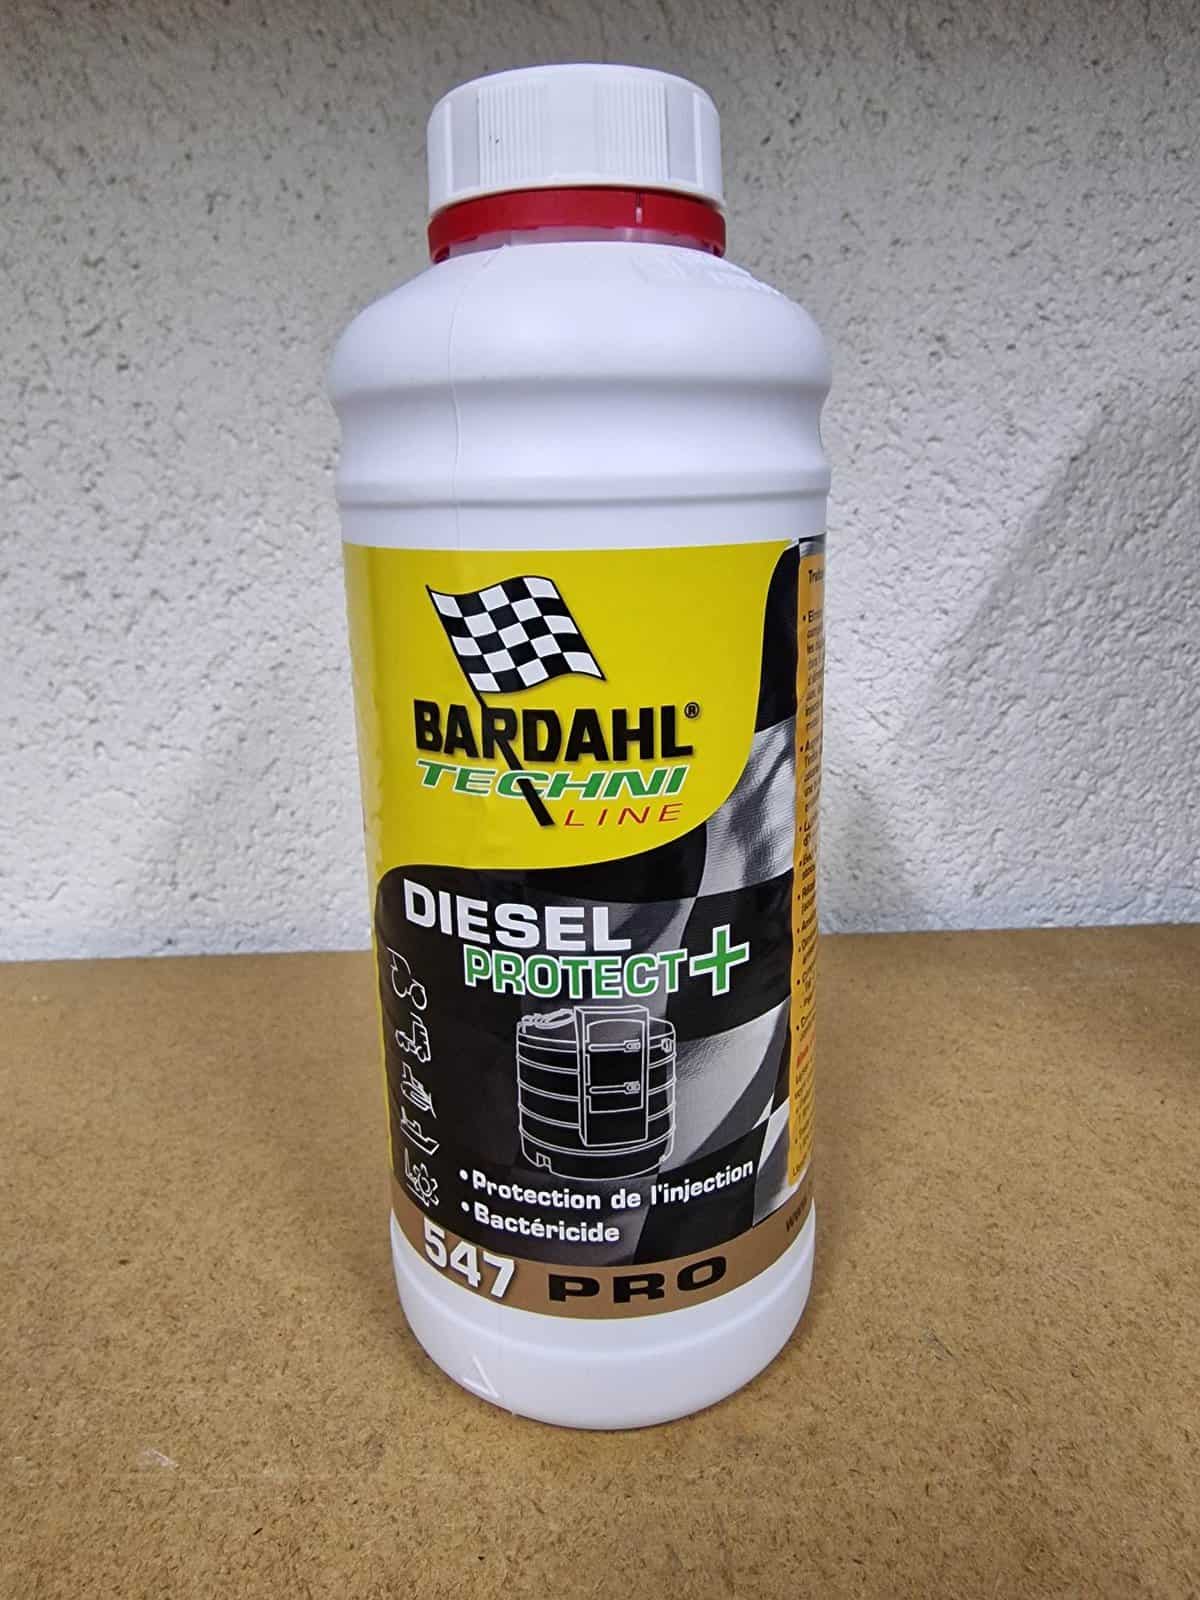 Diesel spoeling pour filtre à carburant 500ml - Bardahl